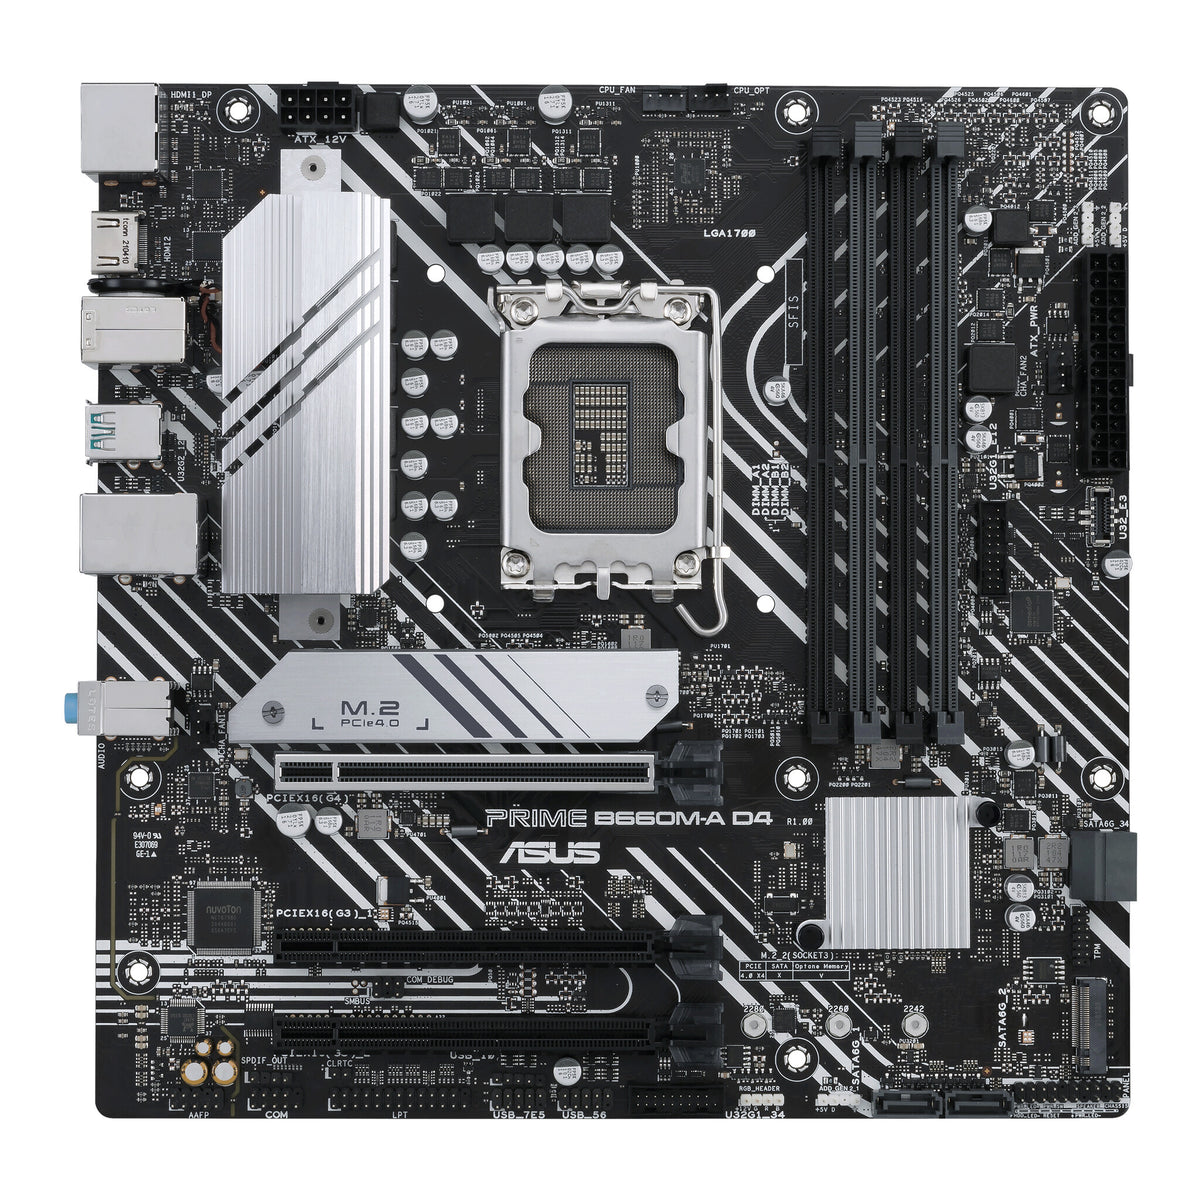 ASUS PRIME B660M-A D4 micro ATX motherboard - Intel B660 LGA 1700